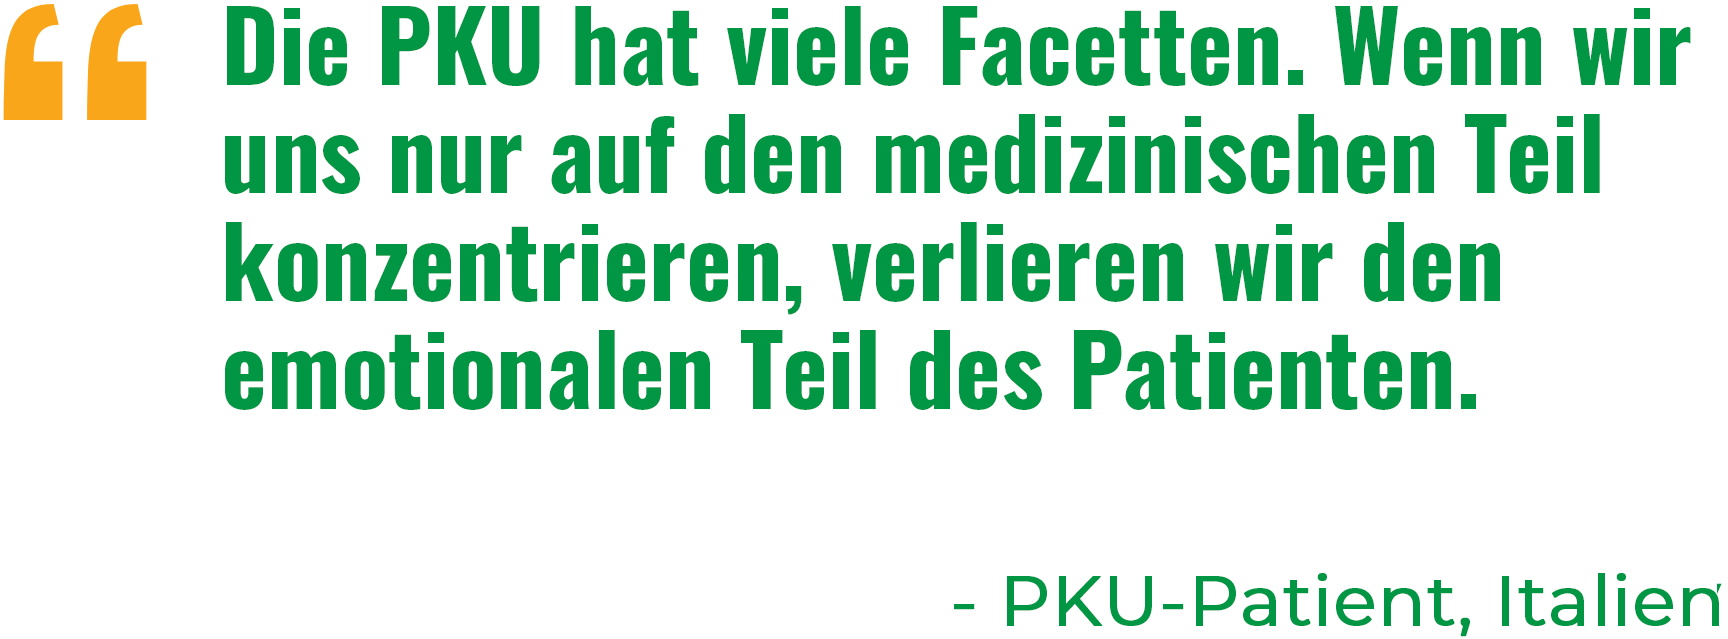 “Die PKU hat viele Facetten. Wenn wir uns nur auf den medizinischen Teil konzentrieren, verlieren wir den emotionalen Teil des Patienten.“ - PKU-Patient, Italien